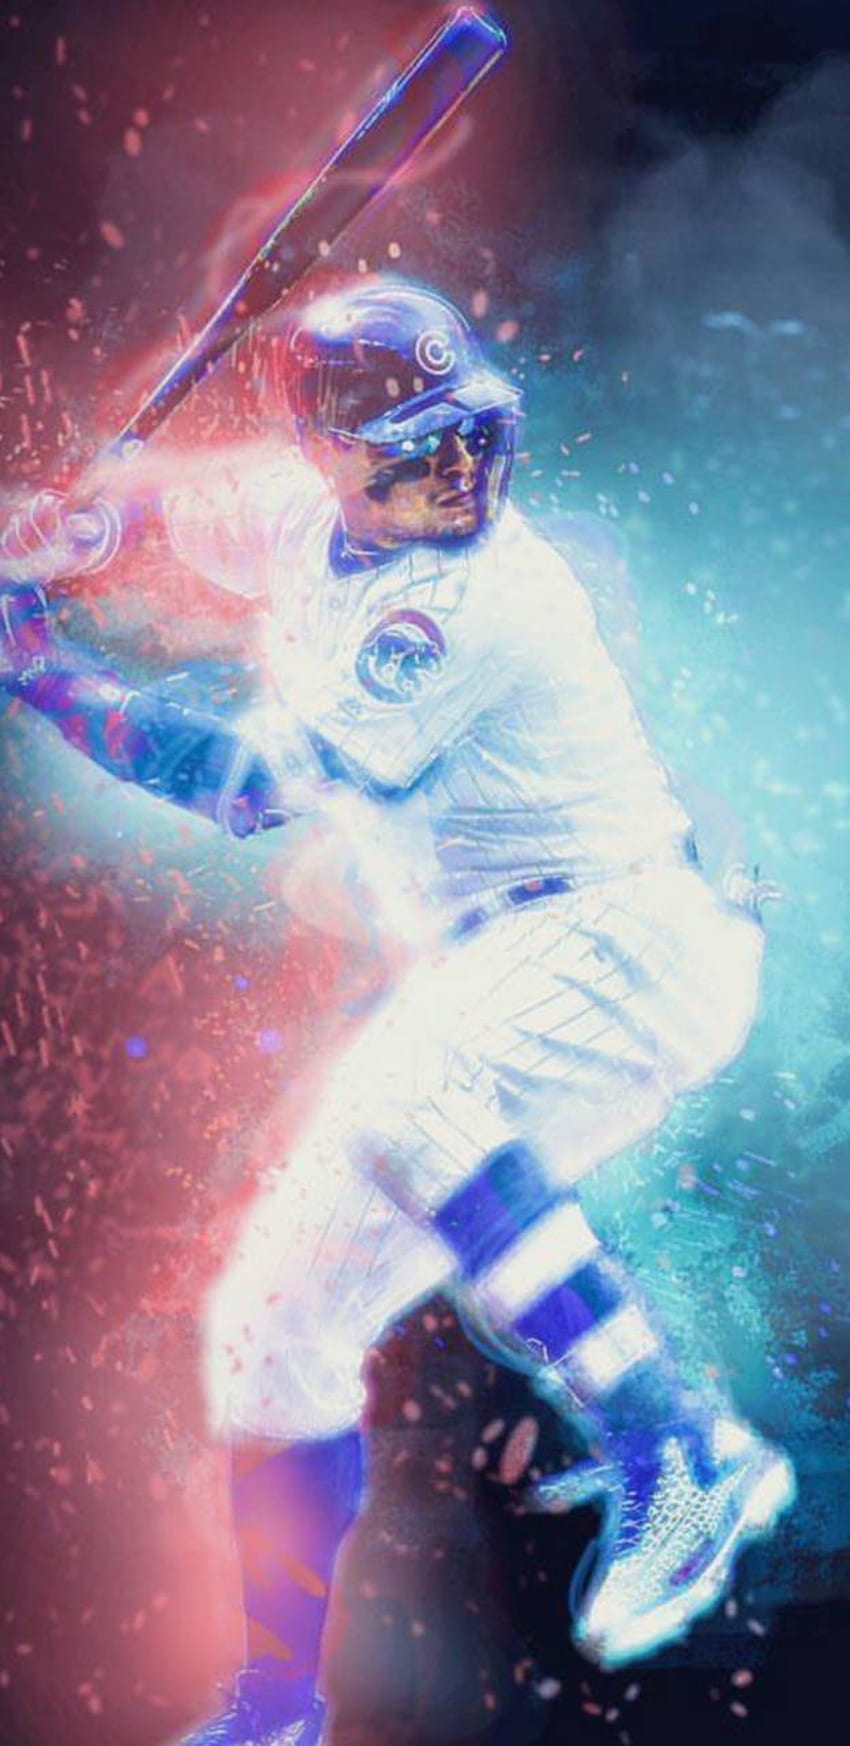 El Mago (Javier Báez) - Chicago Cubs - Original on Wood